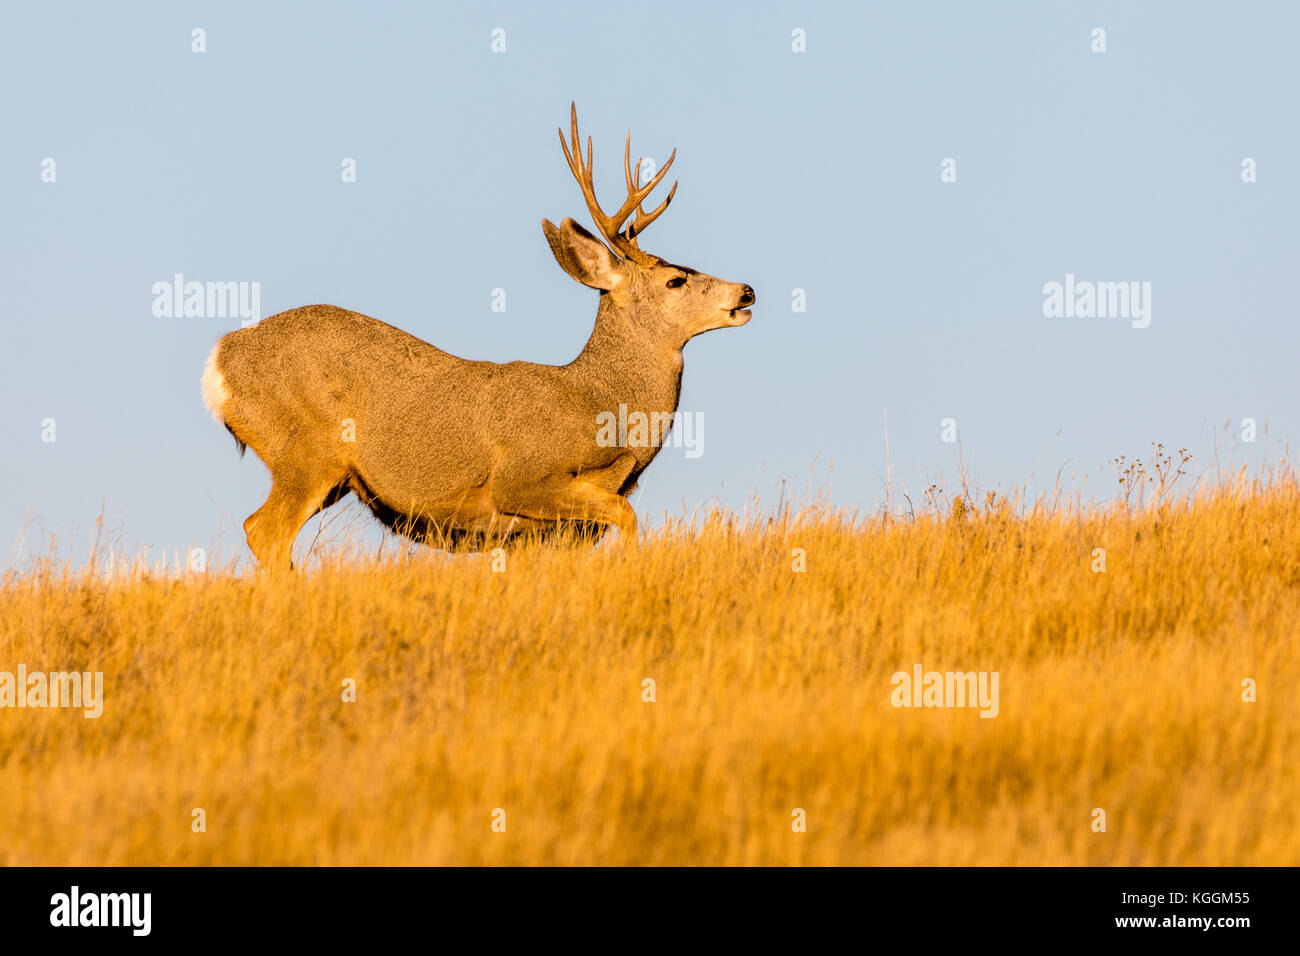 Mule deer (Odocoileus hemionus), Wall, South Dakota, USA Stock Photo